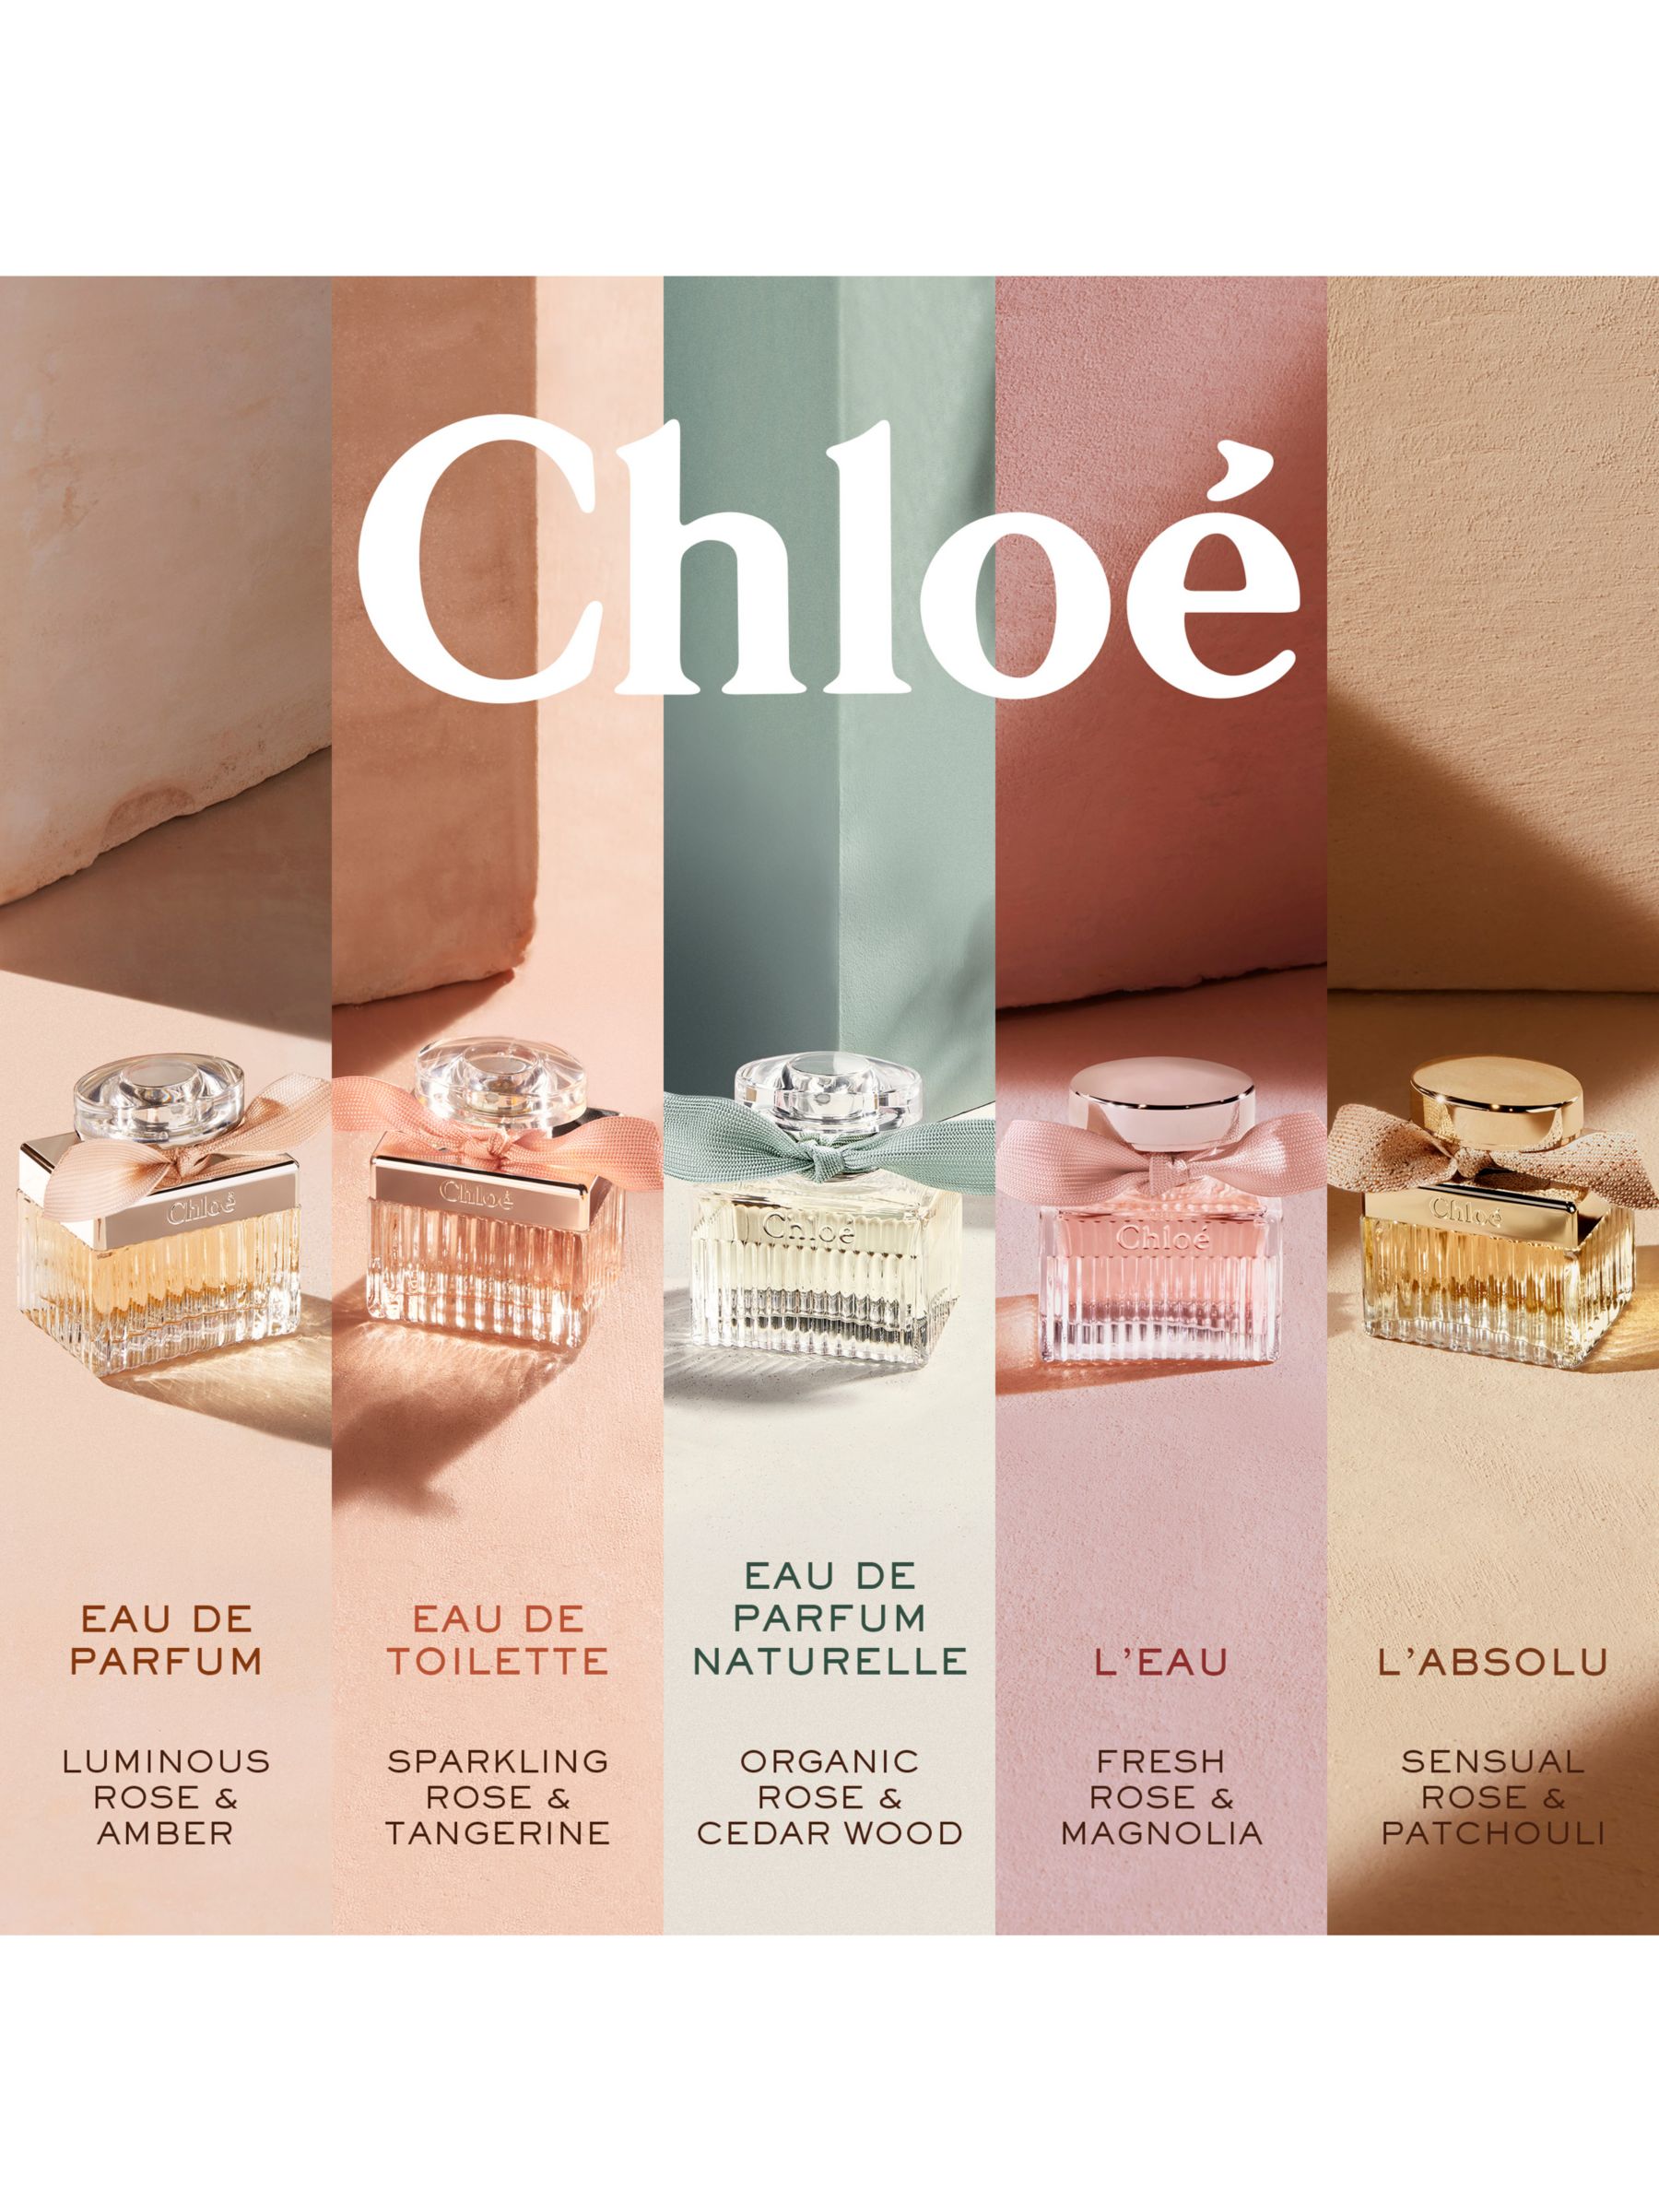 Chloé Eau de Parfum Naturelle Fragrance Review